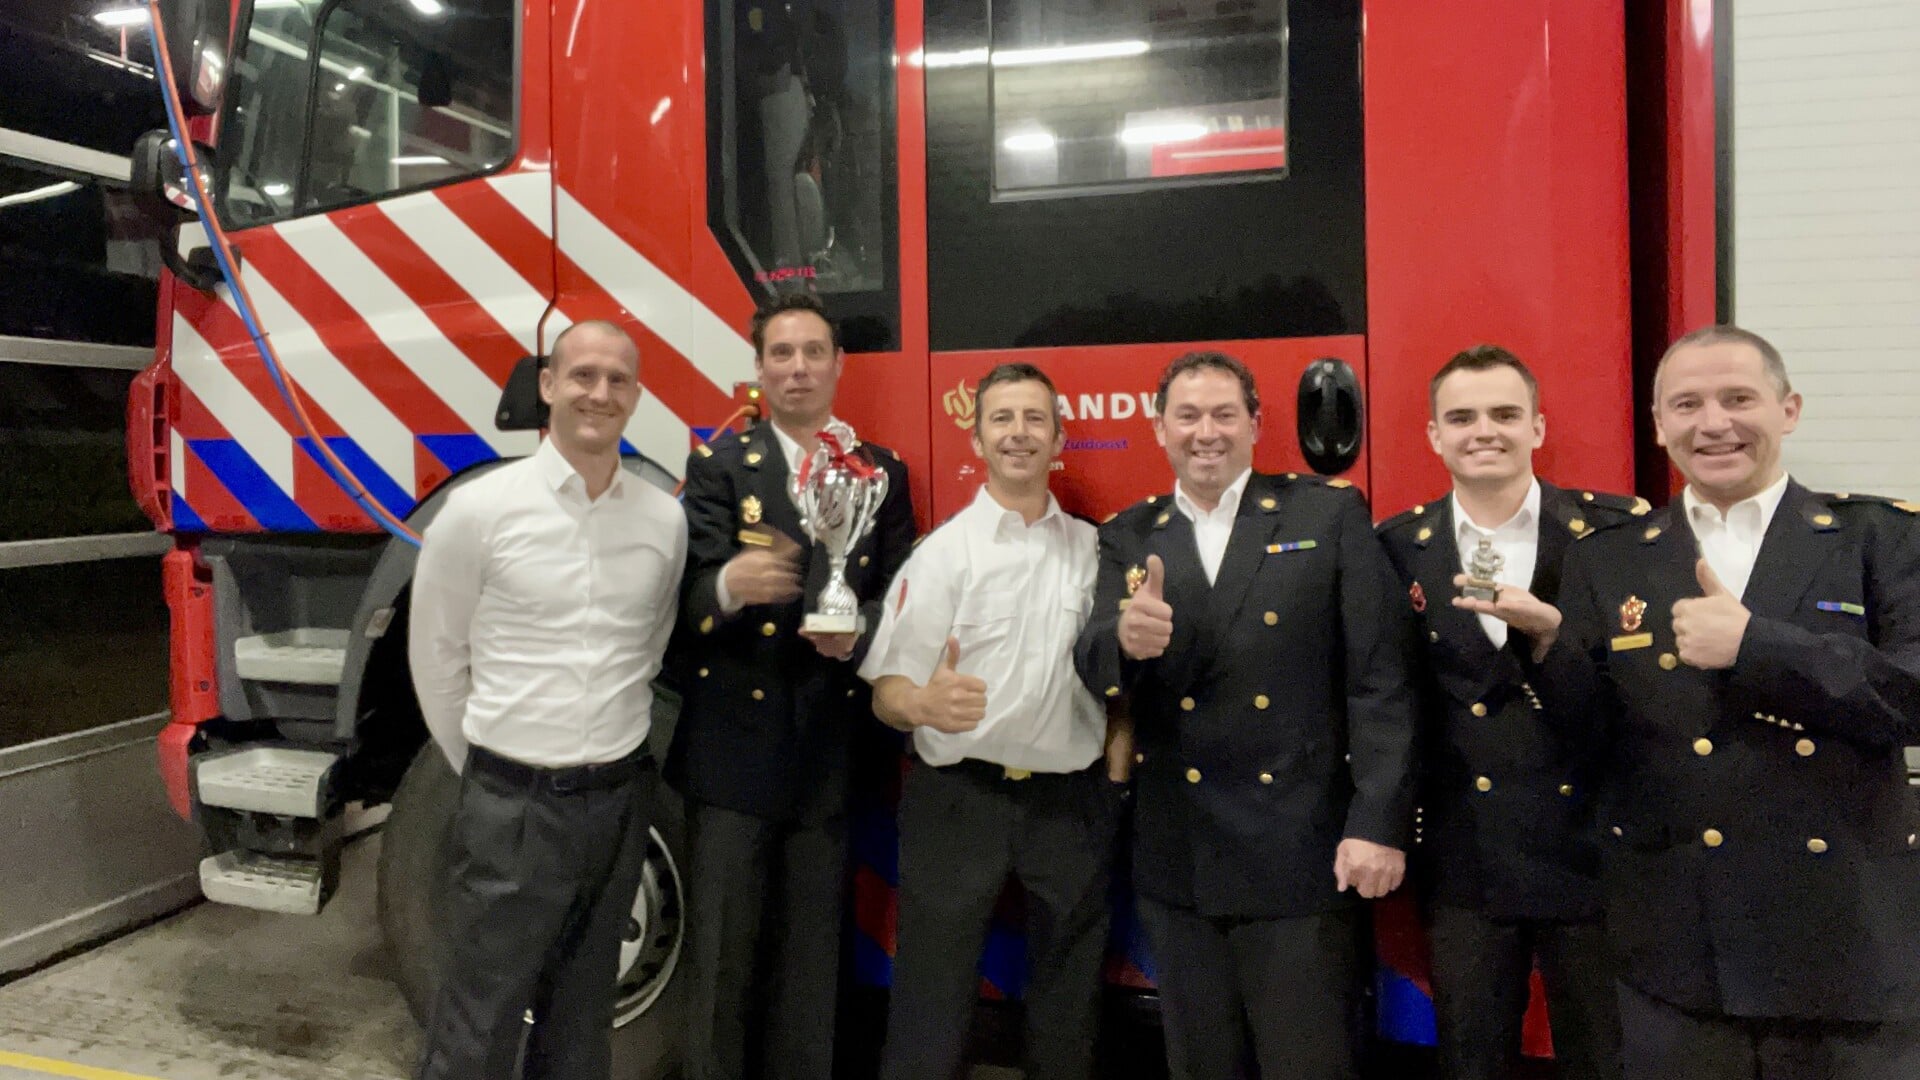 De brandweer van Someren heeft zaterdag in Nieuwekerk aan den IJssel een derde plaats behaald in een vaardigheidswedstrijd 